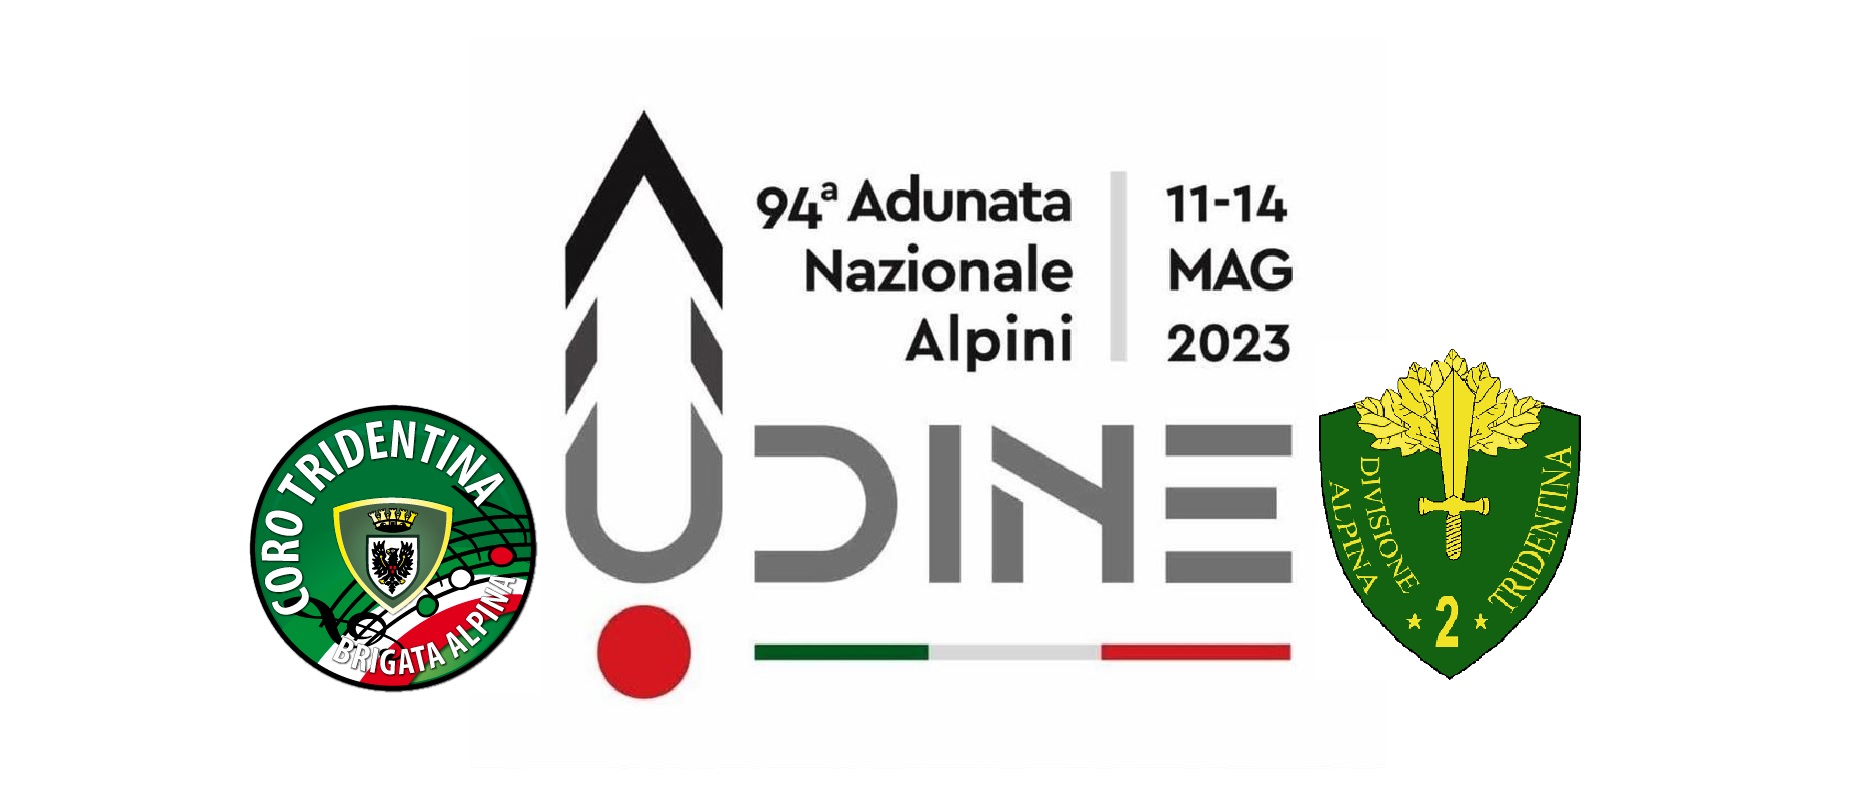 94ª Adunata Nazionale Alpini, UDINE